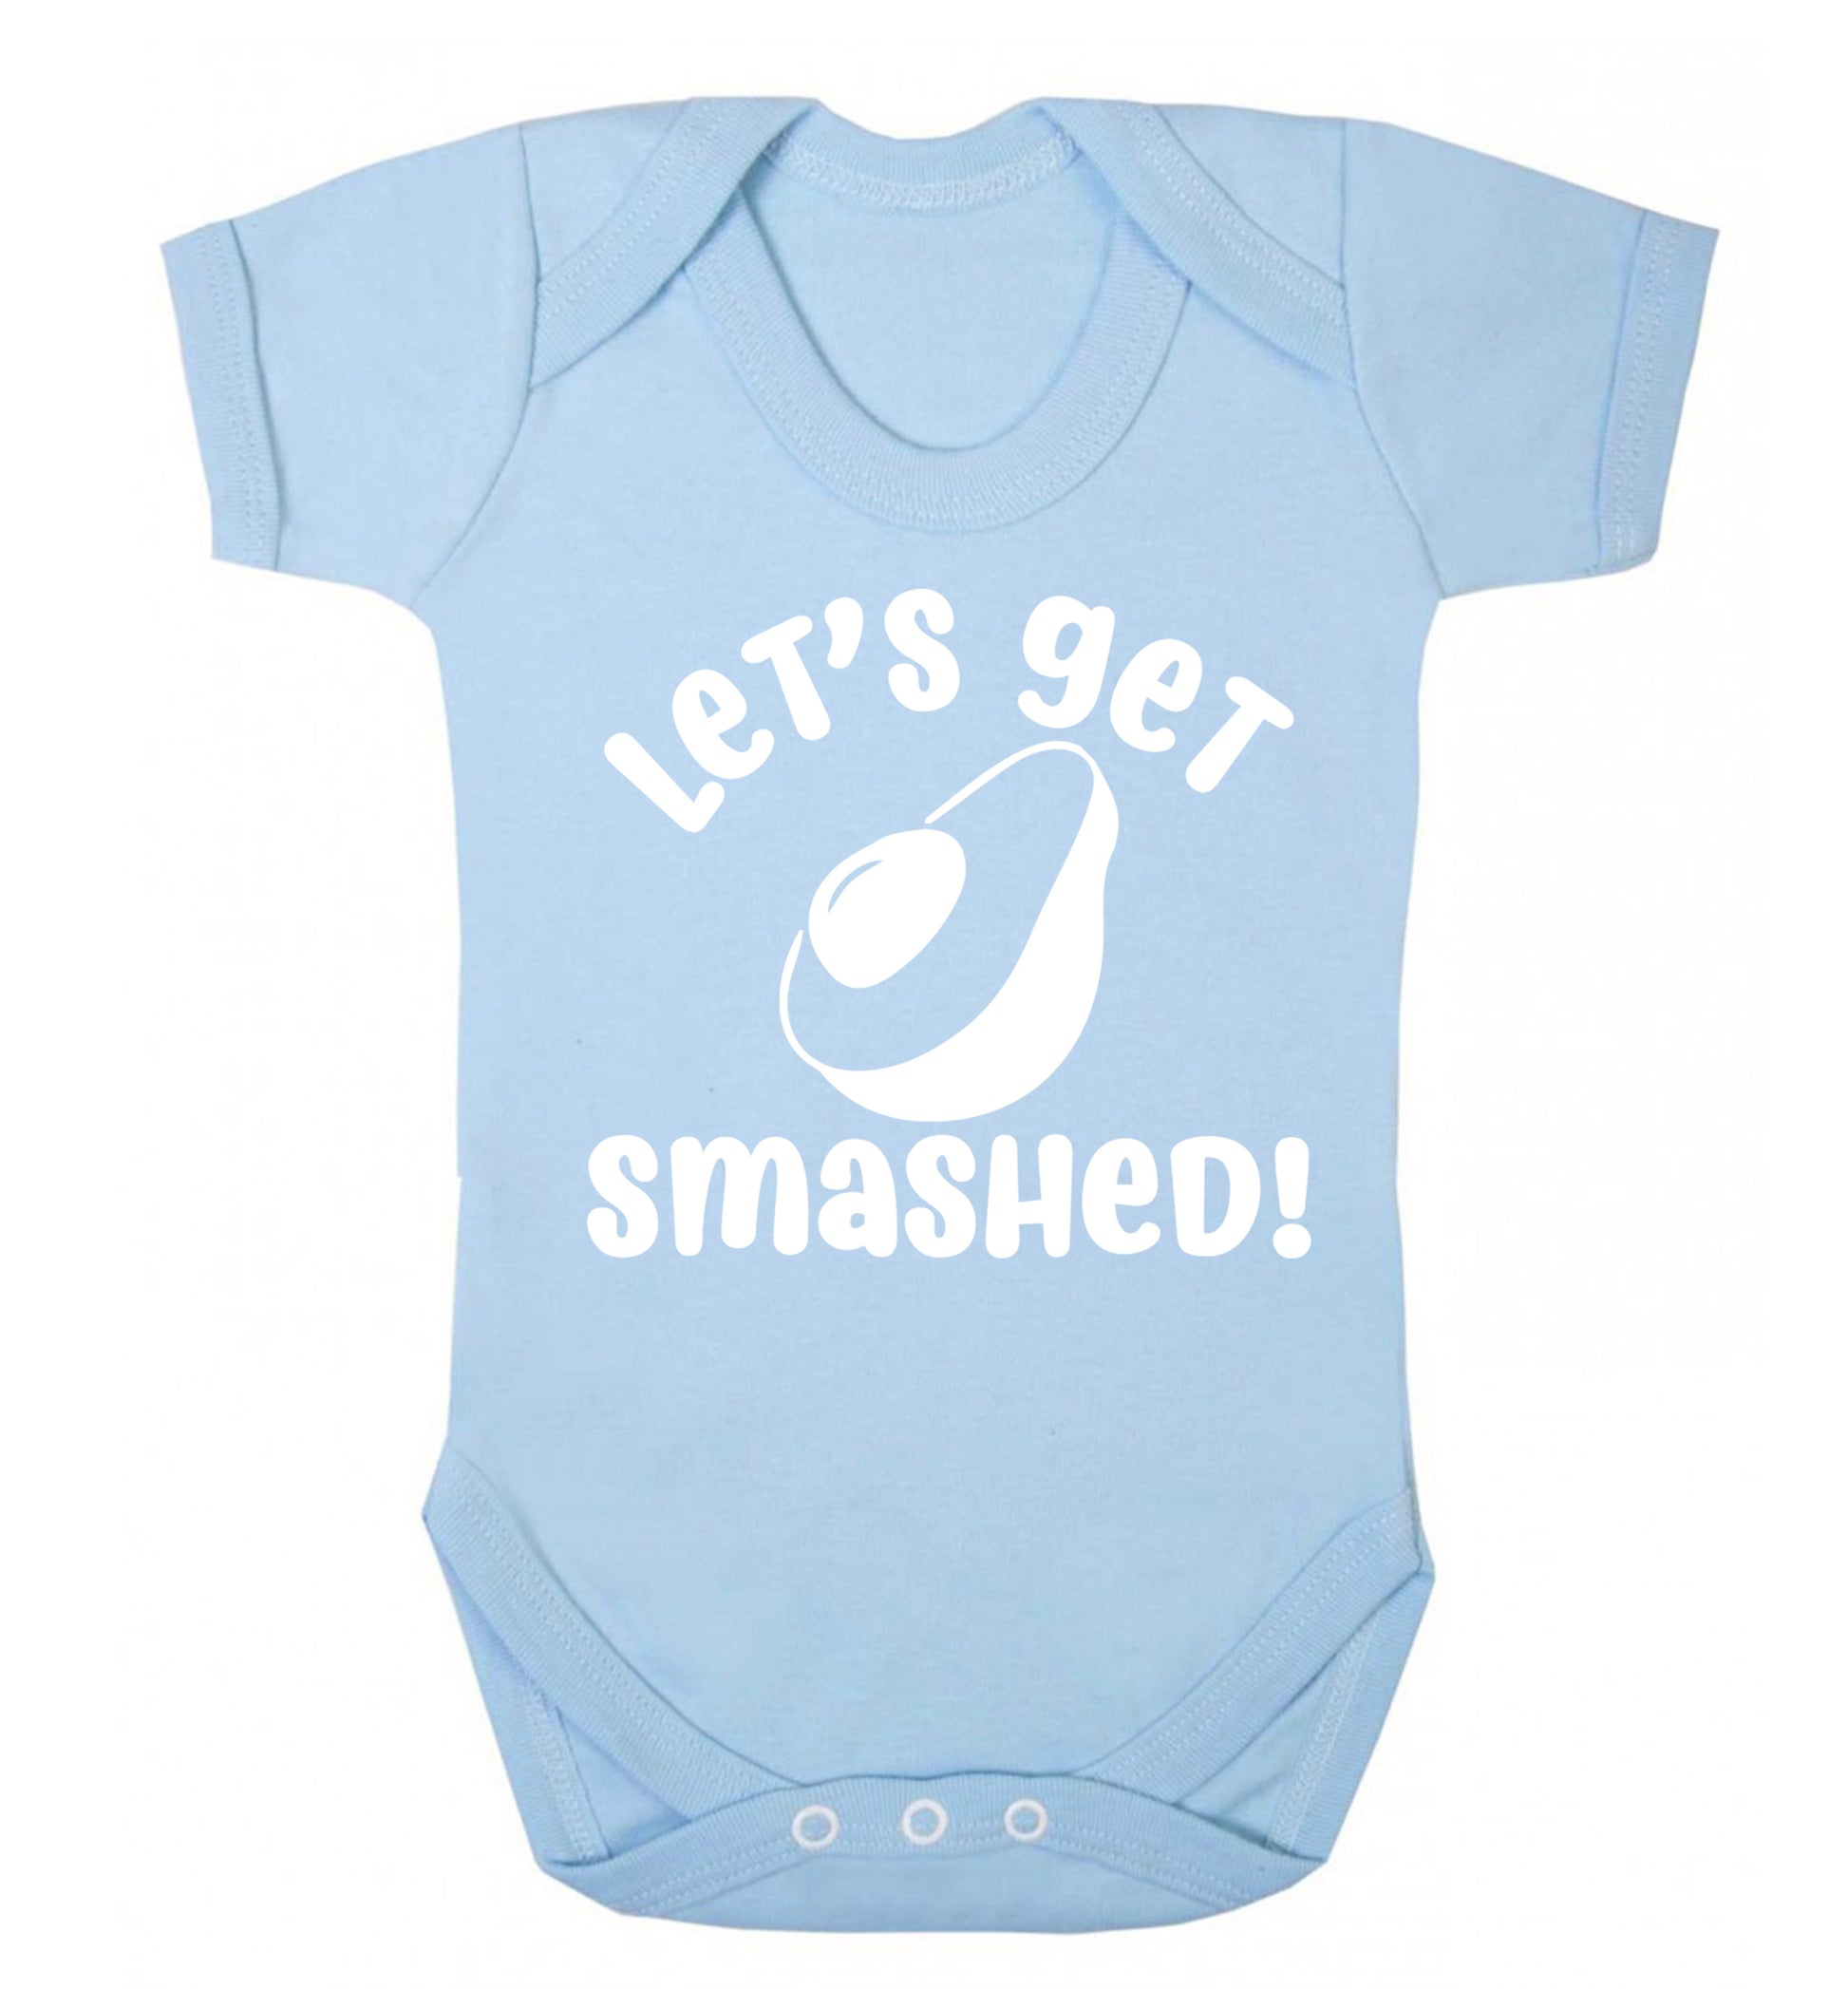 Let's get smashed Baby Vest pale blue 18-24 months